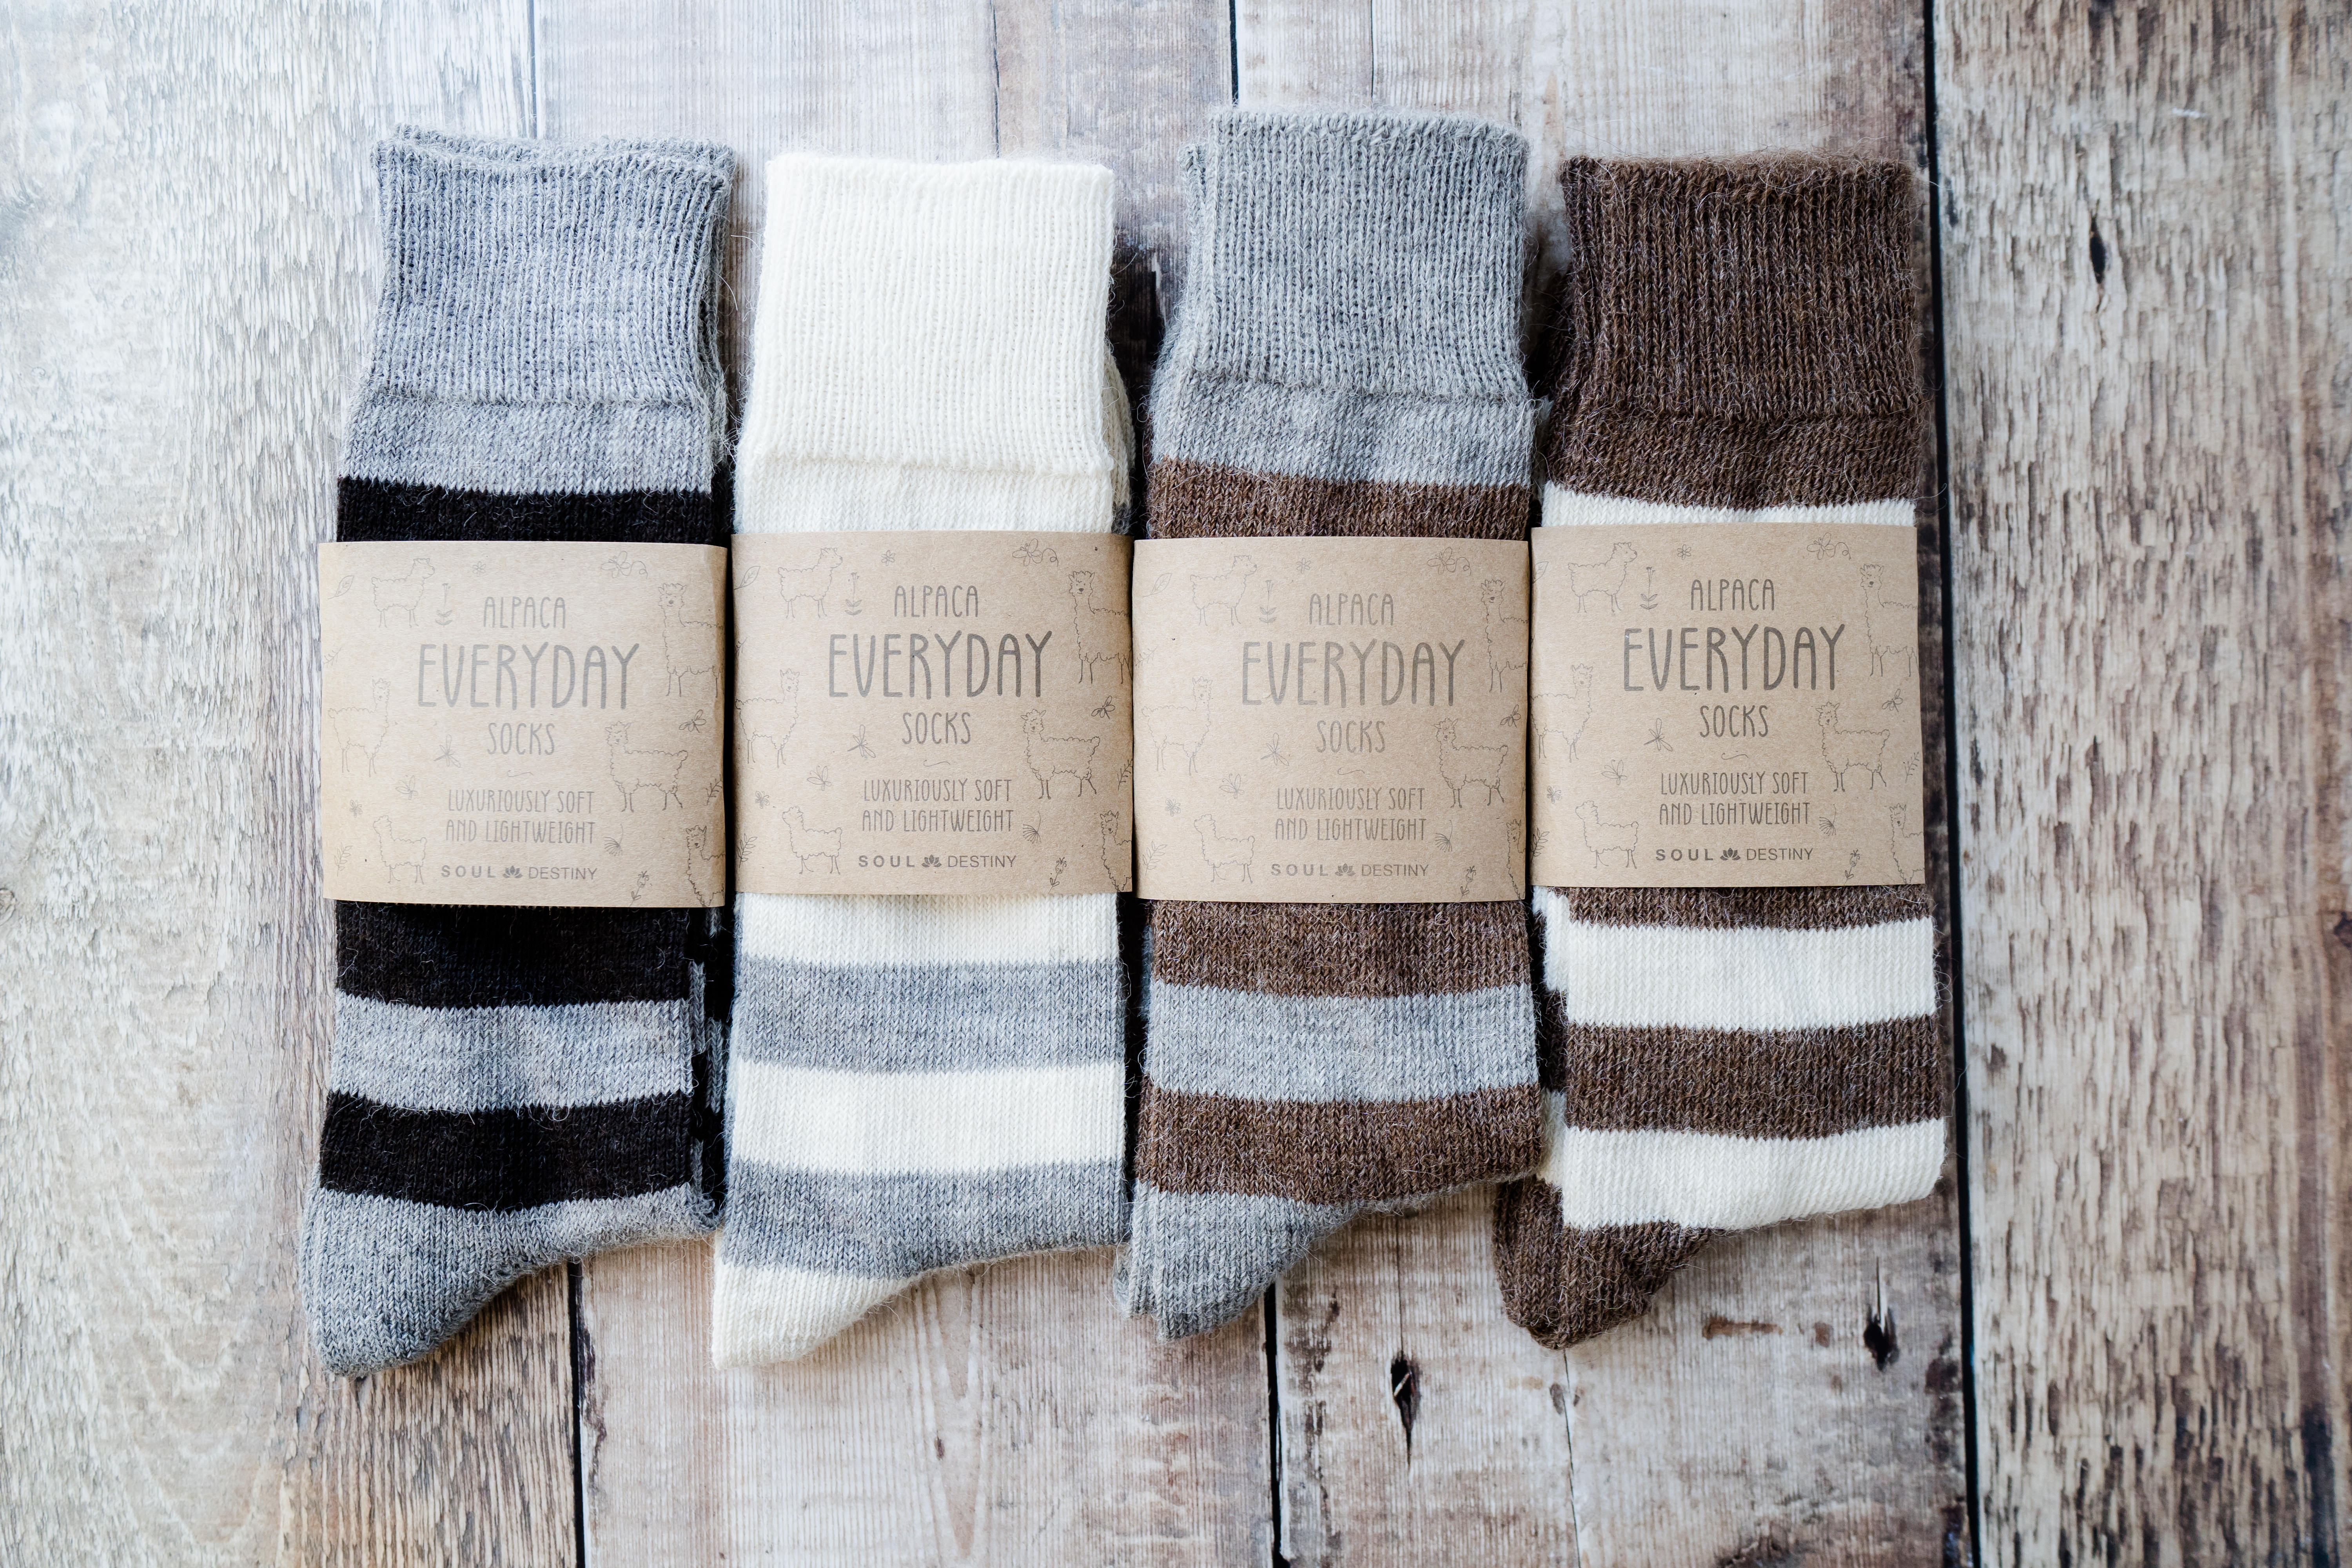 Gift Pack Idea N 4 pairs of Alpaca Striped Socks, 55% Alpaca Wool